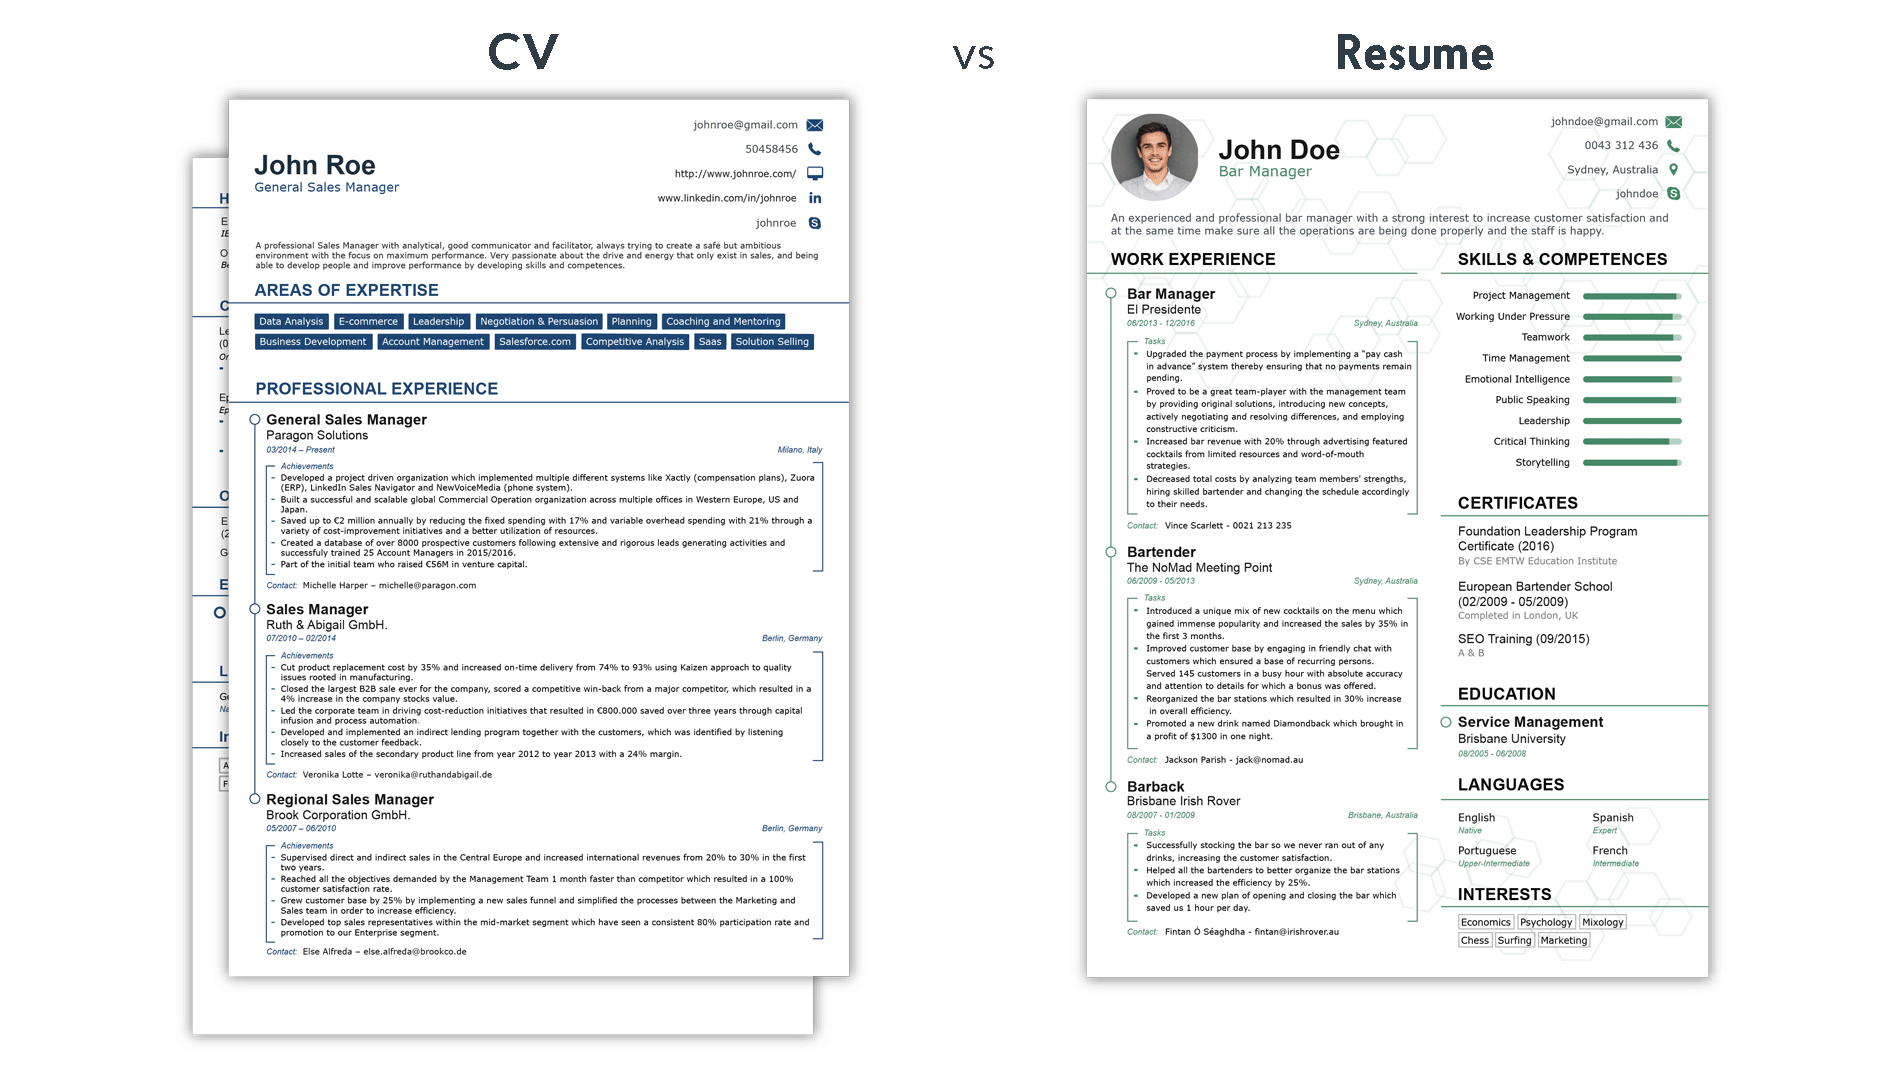 How To Write A Resume For A Job Curriculum Vitae Vs Resume how to write a resume for a job|wikiresume.com